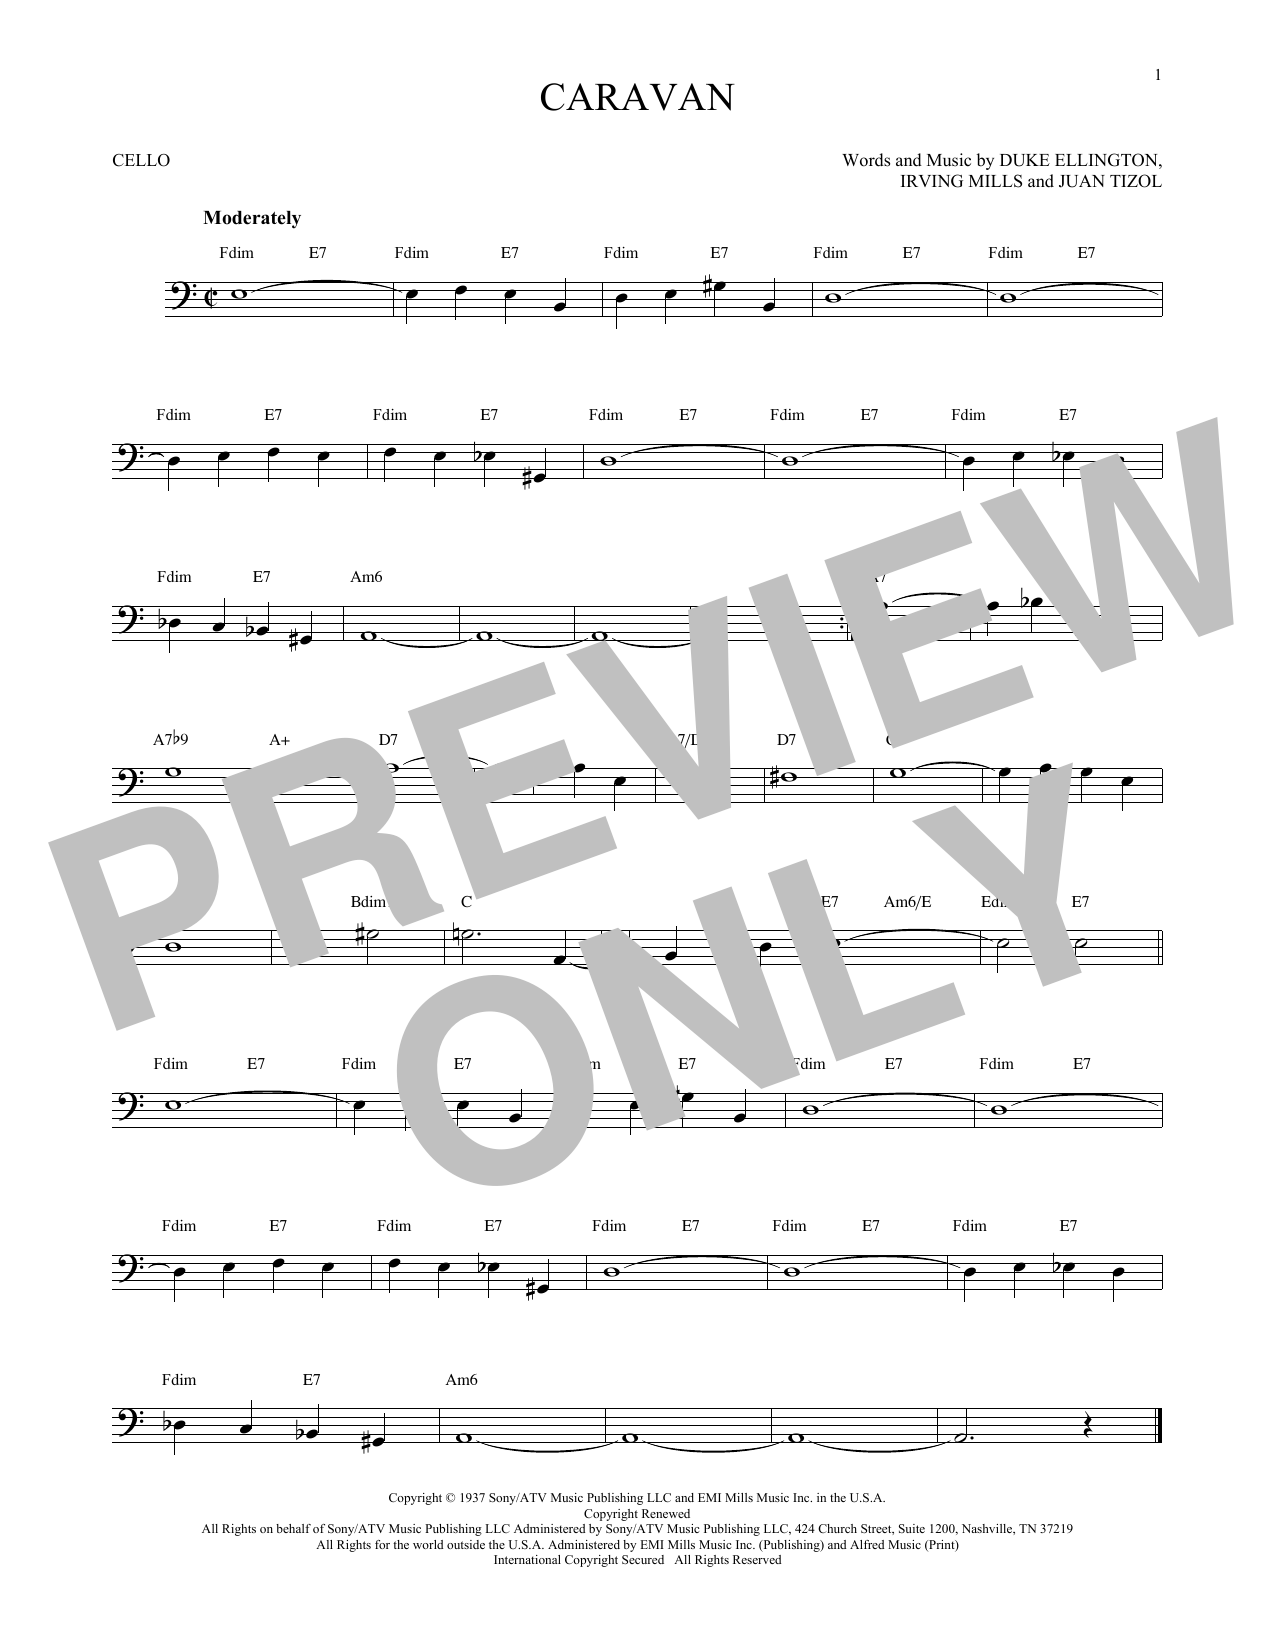 Juan Tizol & Duke Ellington Caravan Sheet Music Notes & Chords for Violin - Download or Print PDF